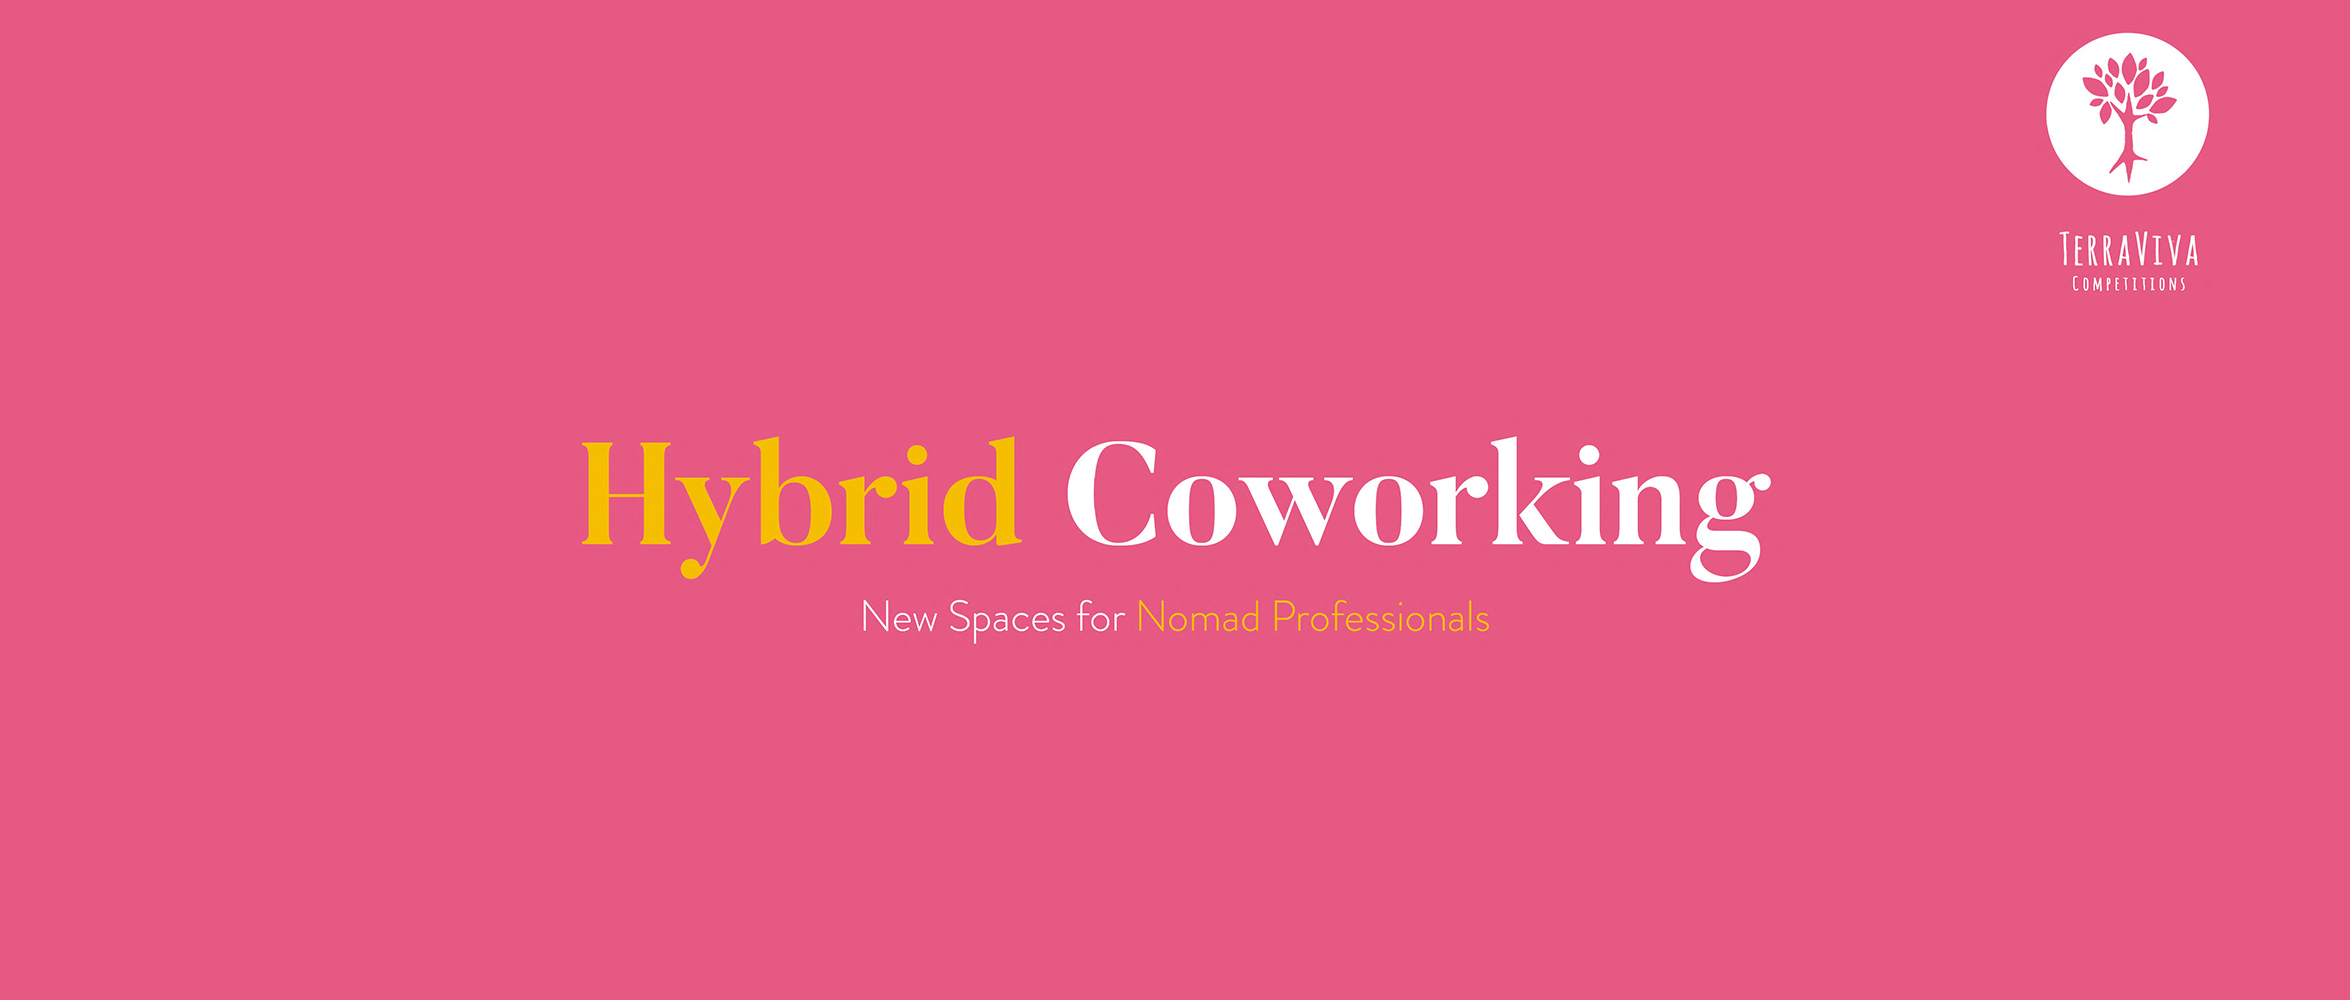 混合式联合办公建筑竞赛（Hybrid Coworking: Architecture Competition）